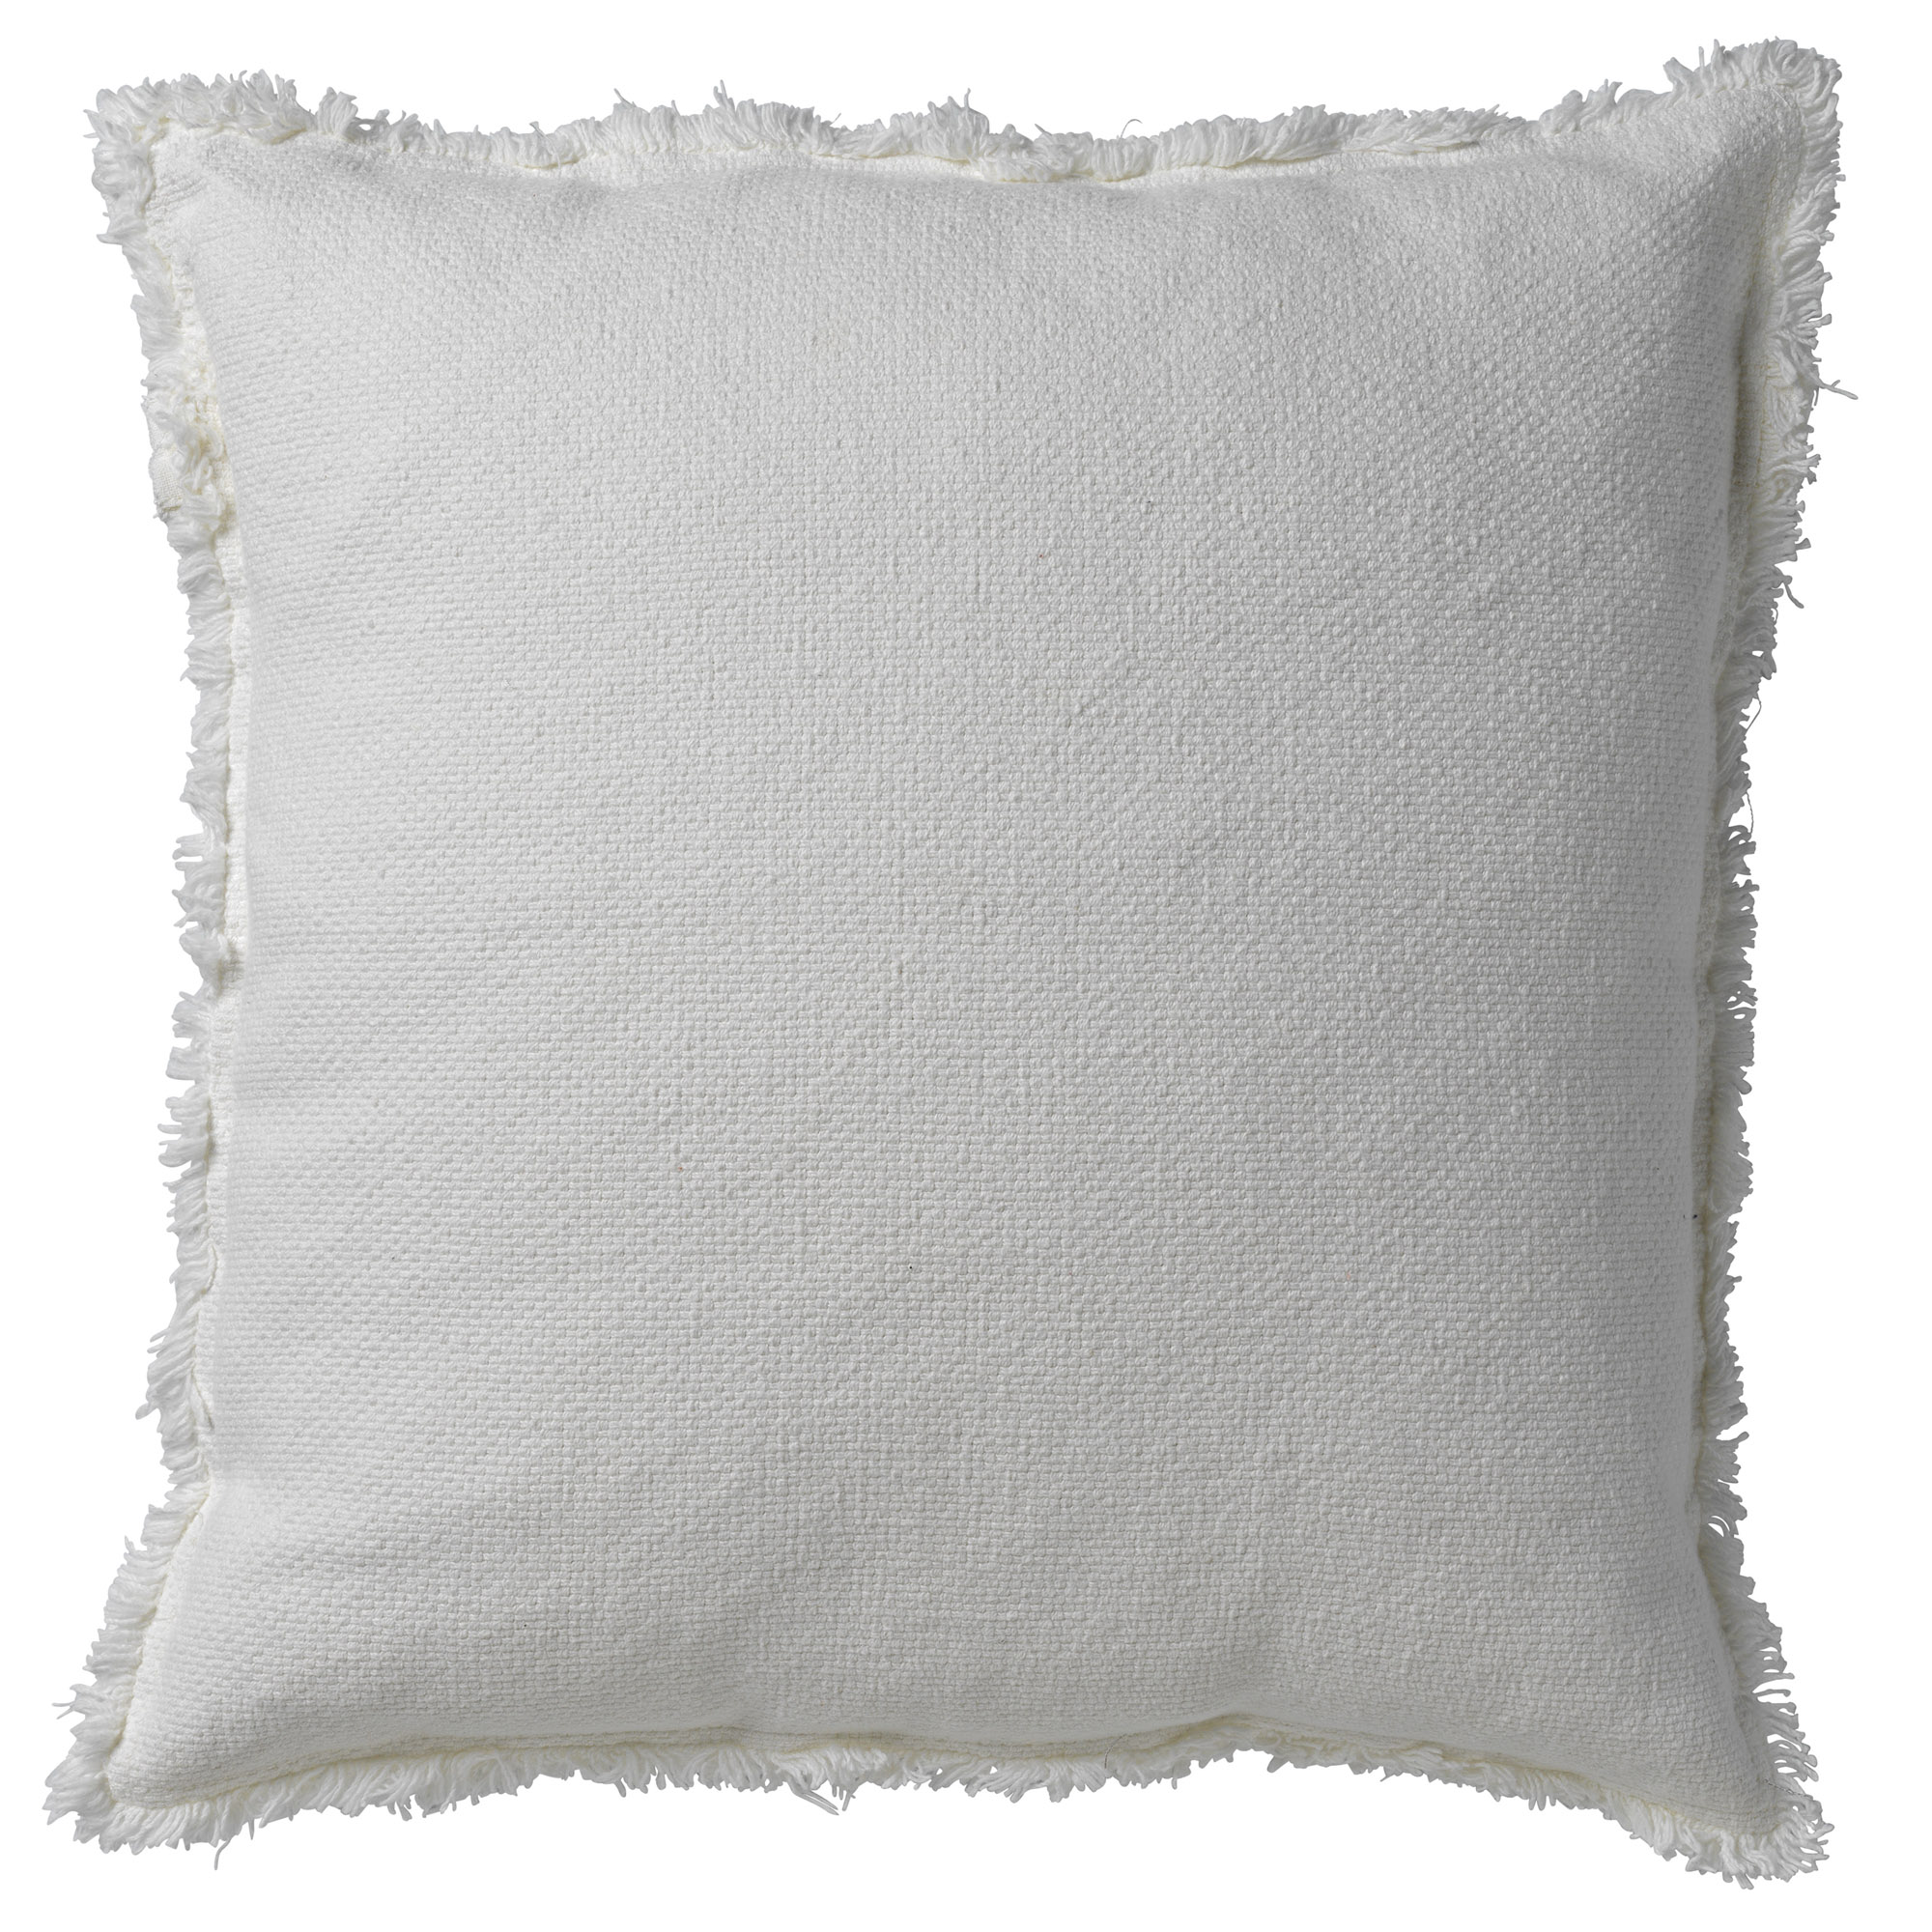 BURTO - Cushion 45x45 cm Snow White - off-white